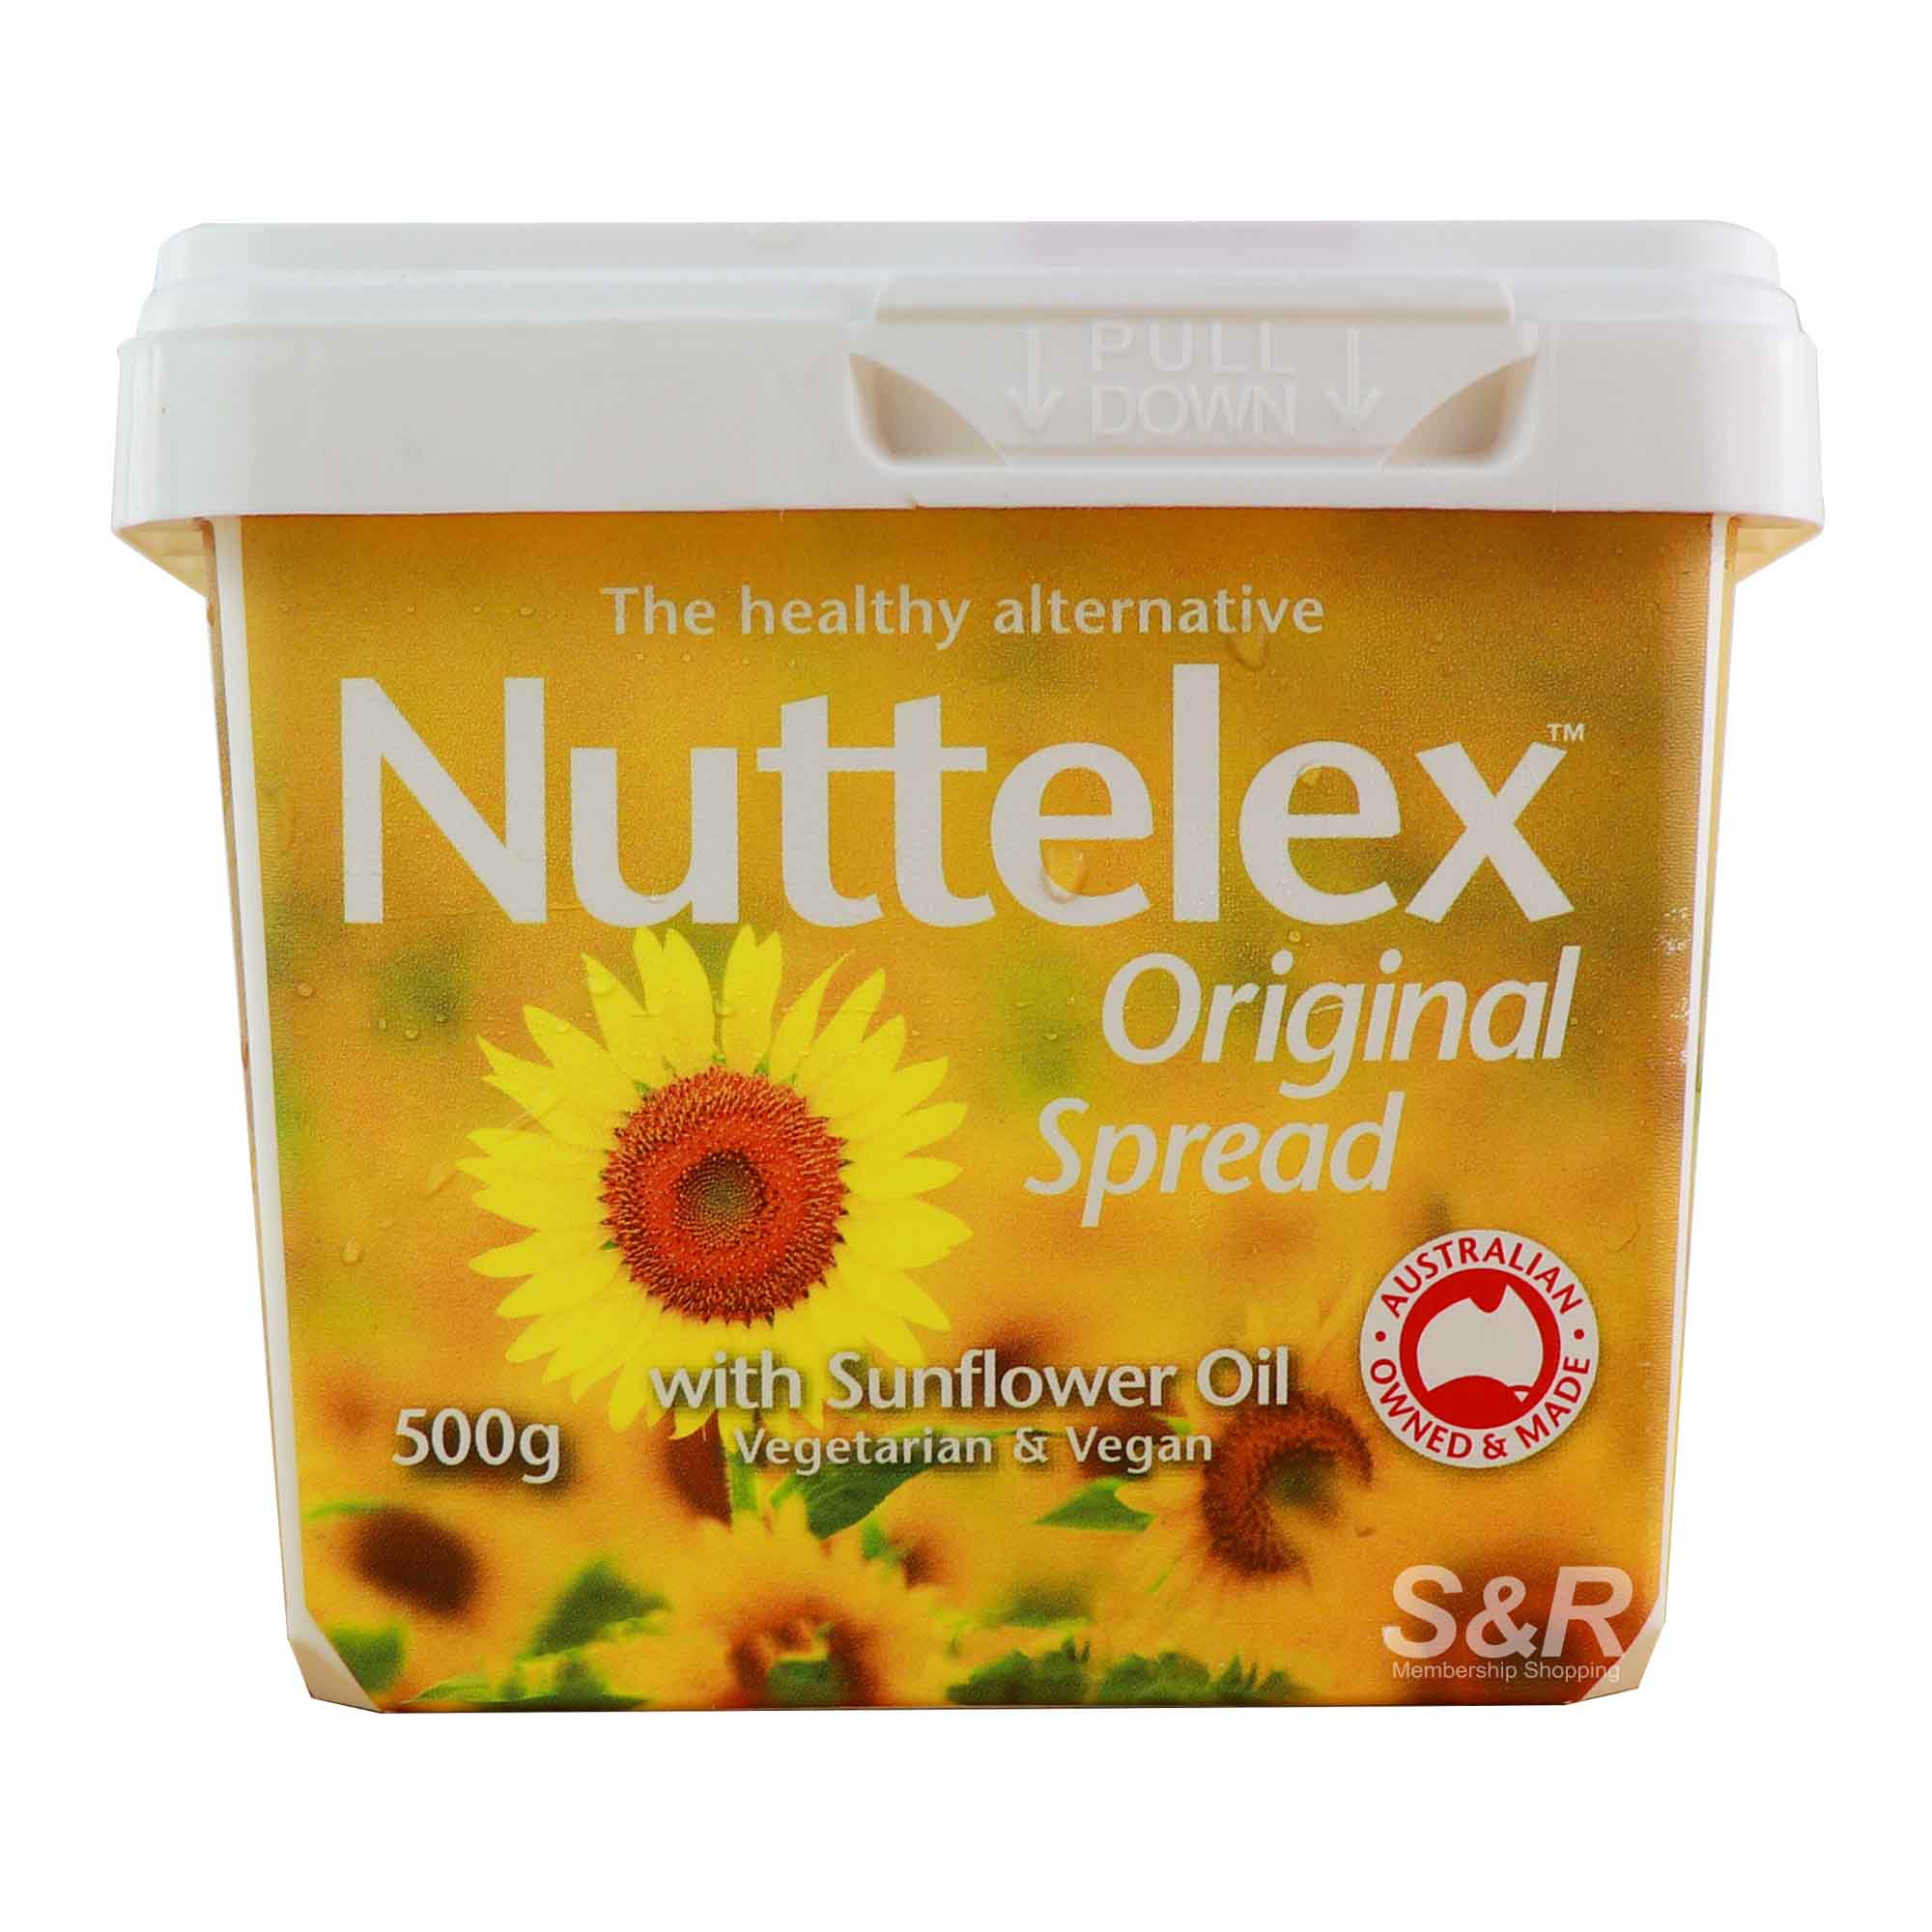 Nuttelex Original Spread with Sunflower Oil 500g